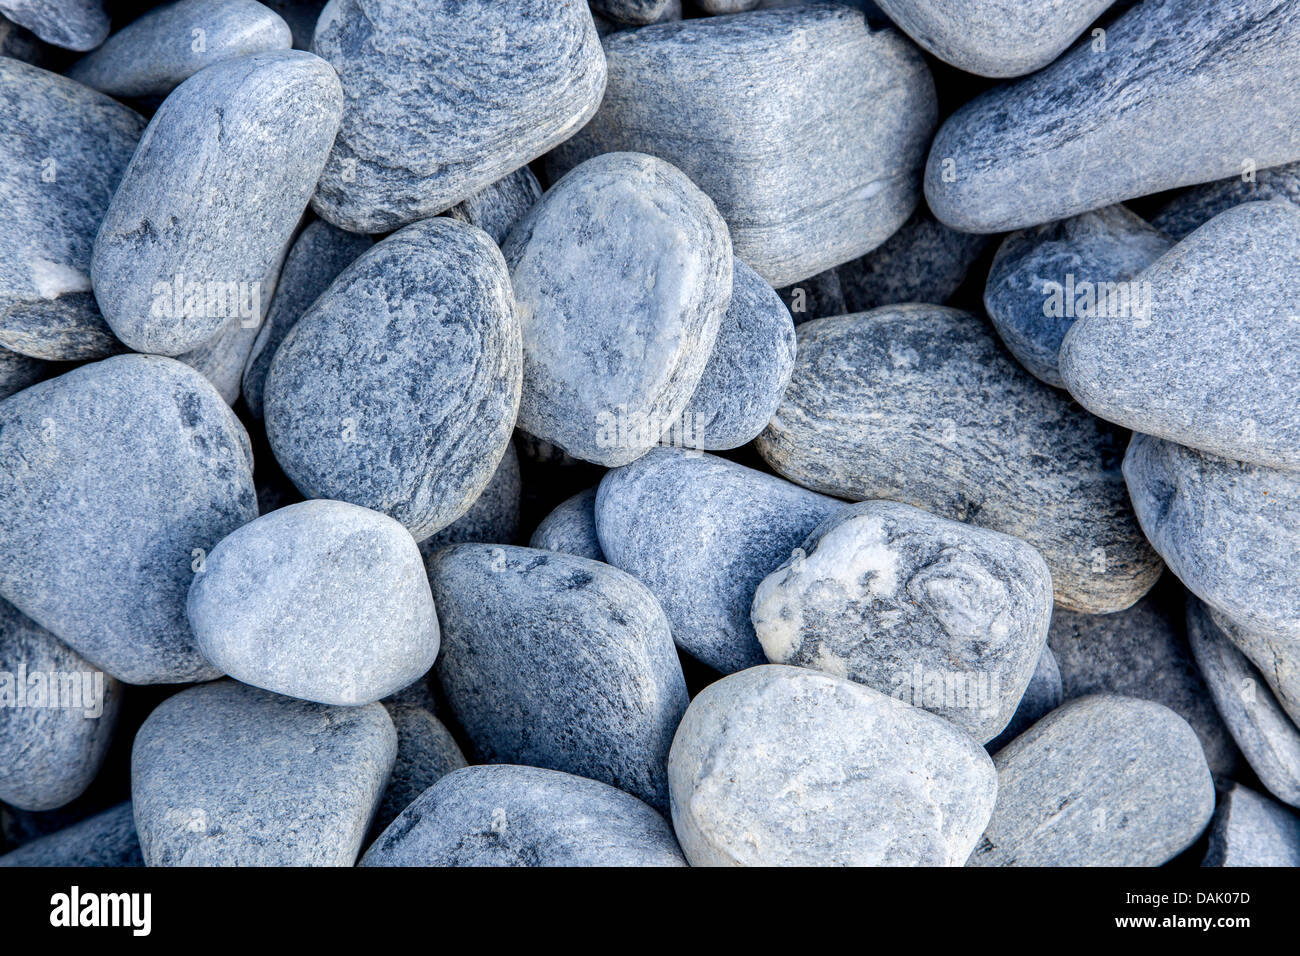 El glaciar islandés de grava, piedras de granito Foto de stock